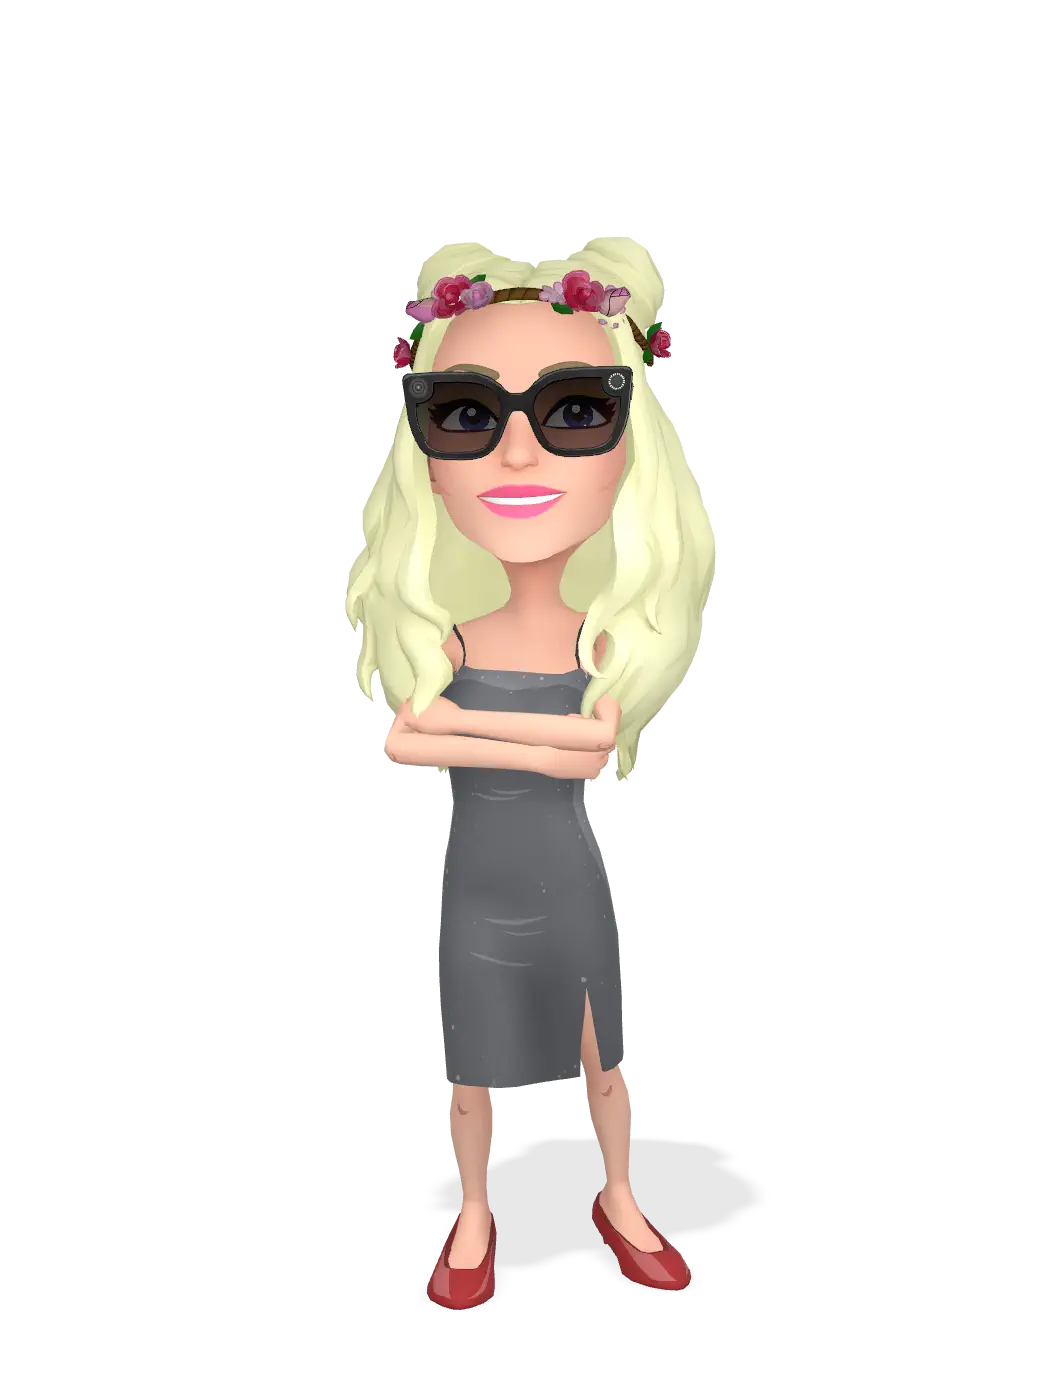 3D Bitmoji for babygirlbugg avatar